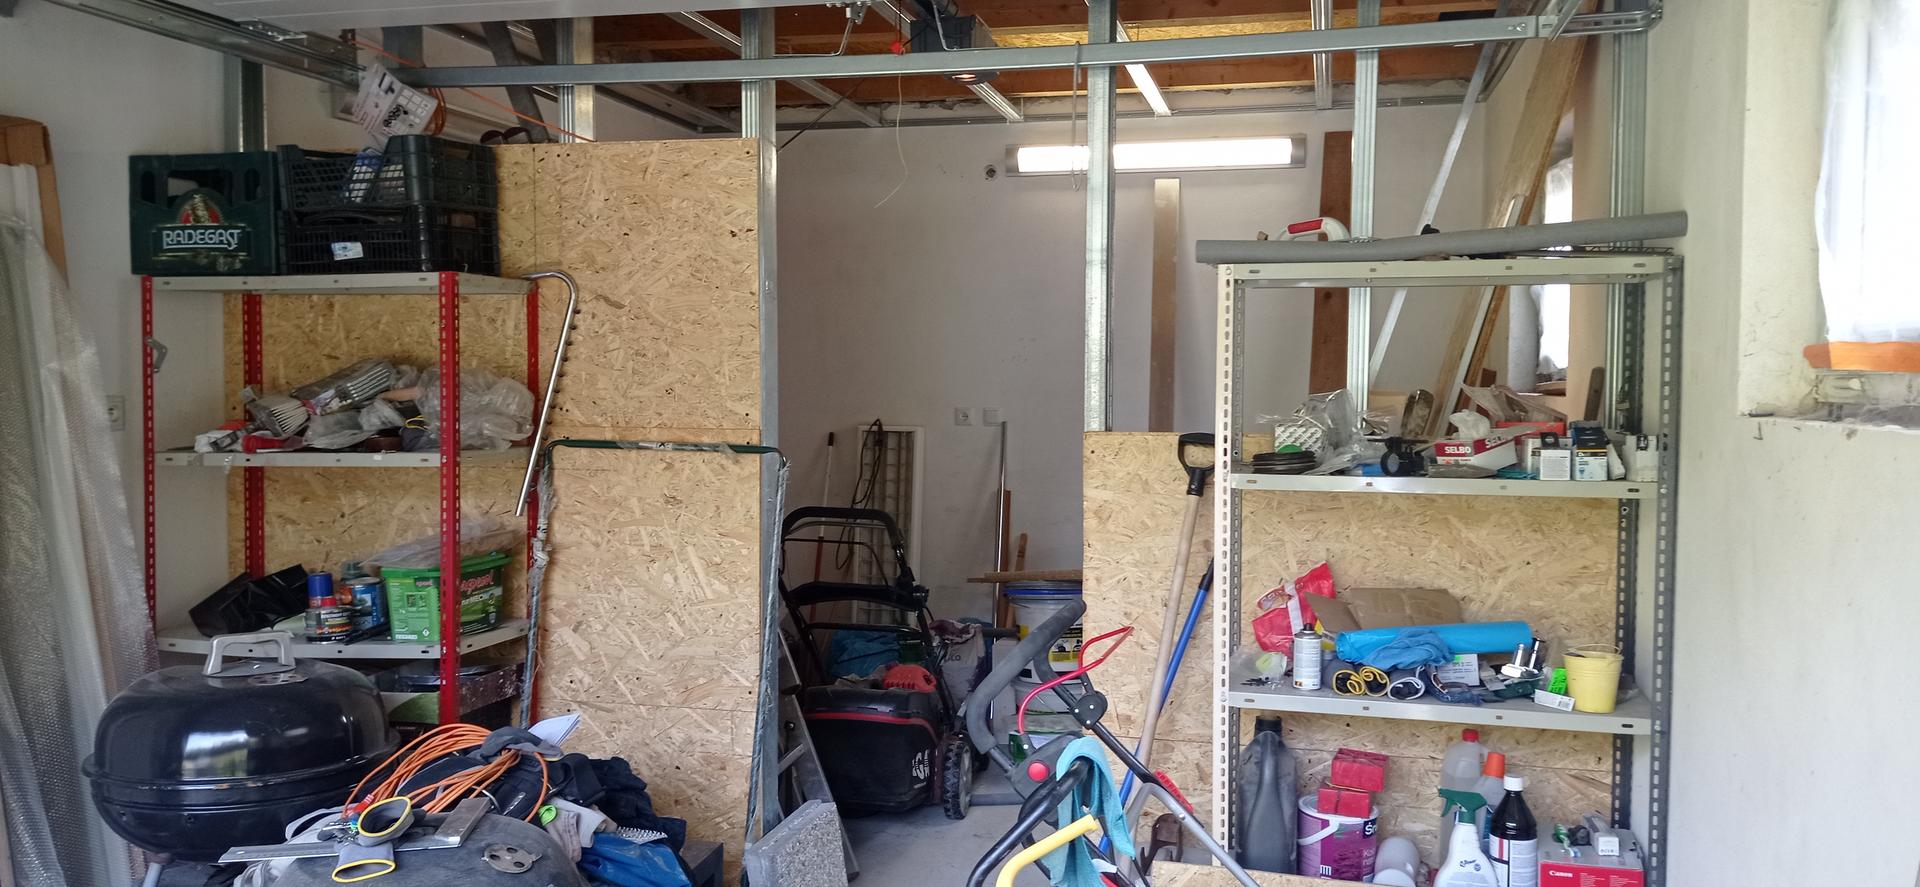 Budování sauny v garáži - Obrázek č. 1